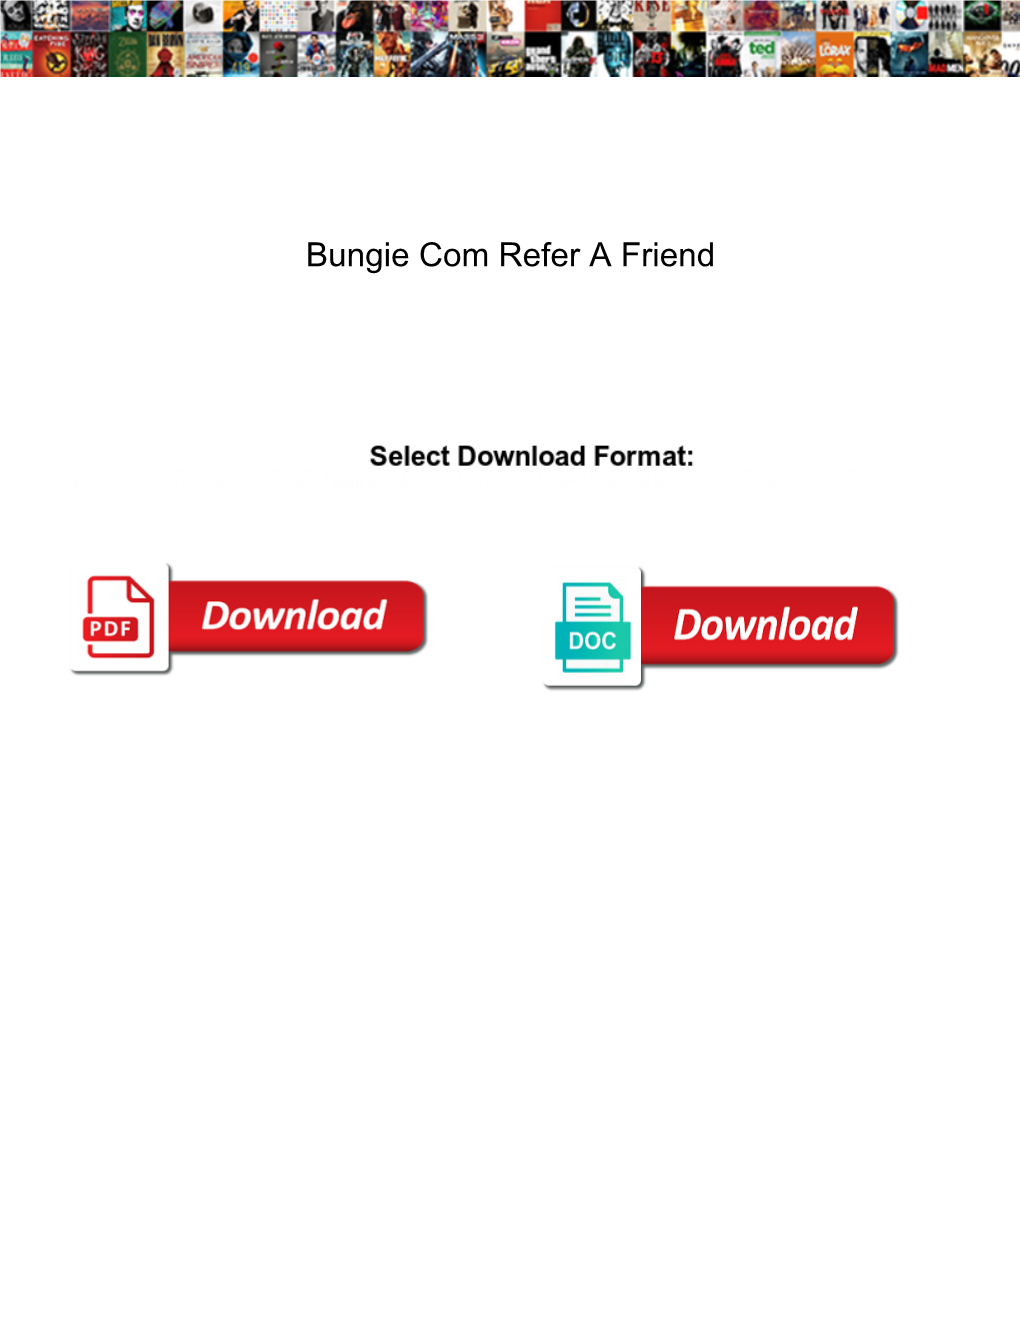 Bungie Com Refer a Friend